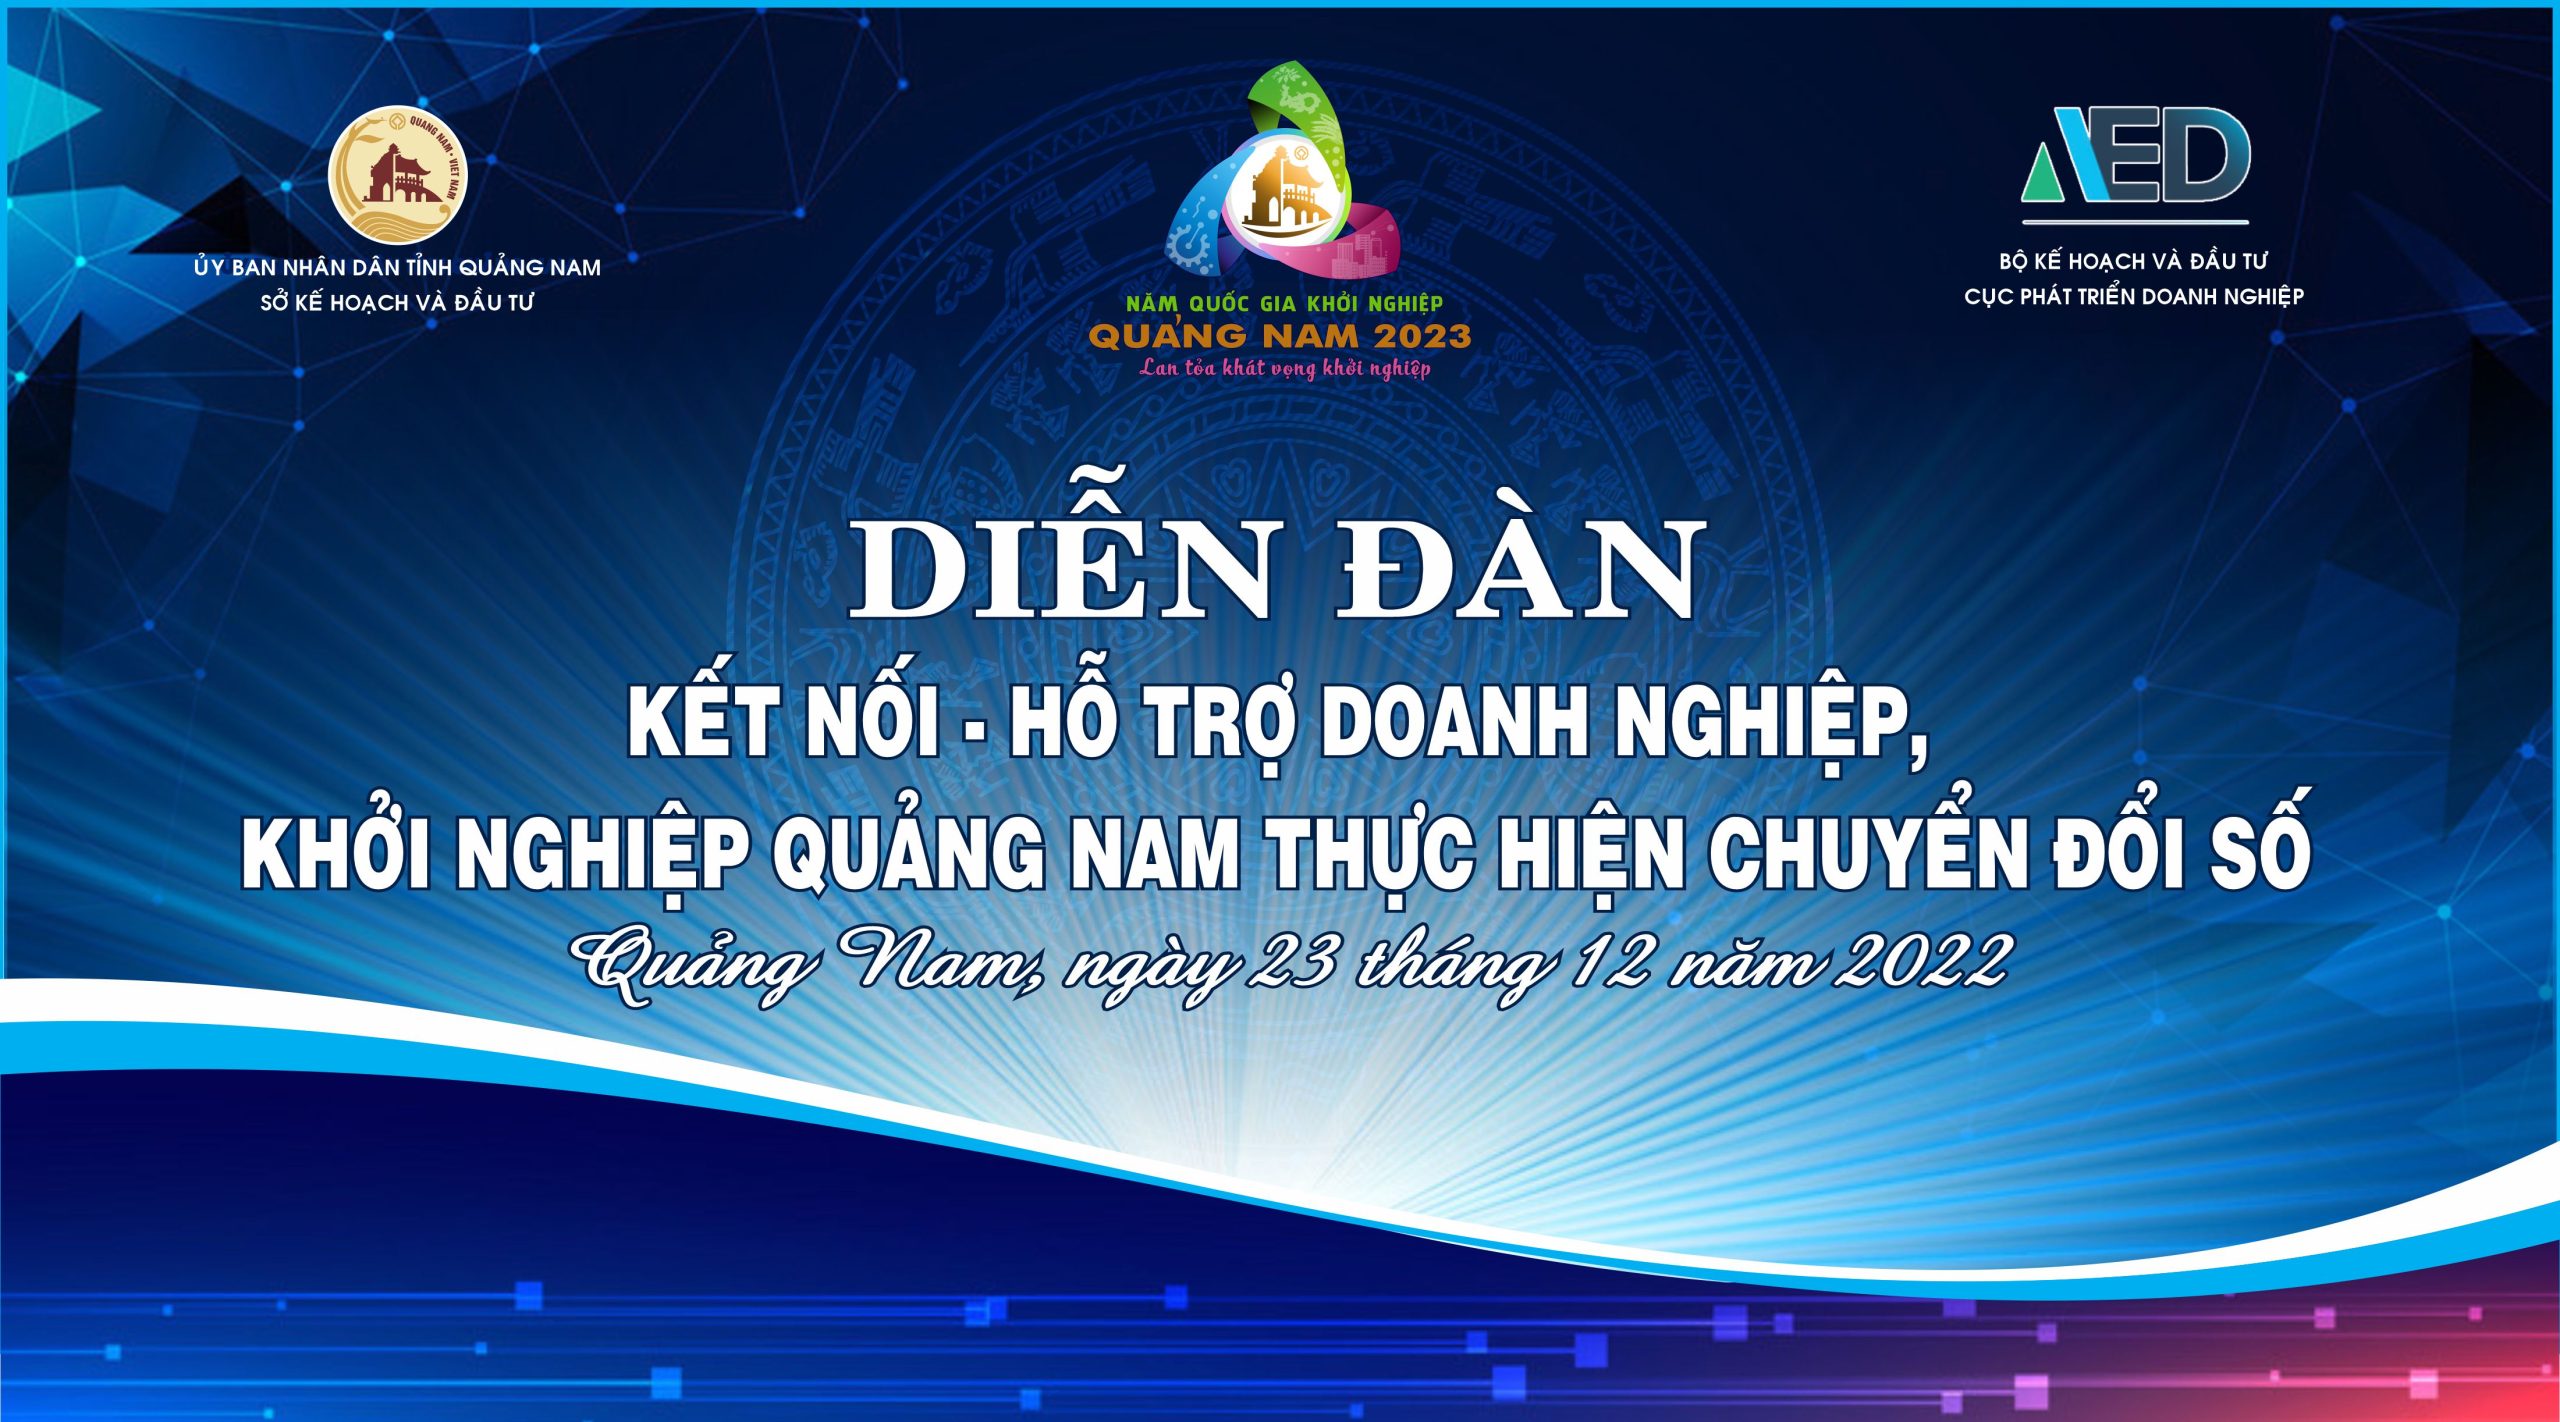 Sự kiện nằm trong chuỗi các hoạt động trong Tuần lễ Khai mạc Năm Quốc gia Khởi nghiệp – Quảng Nam năm 2023